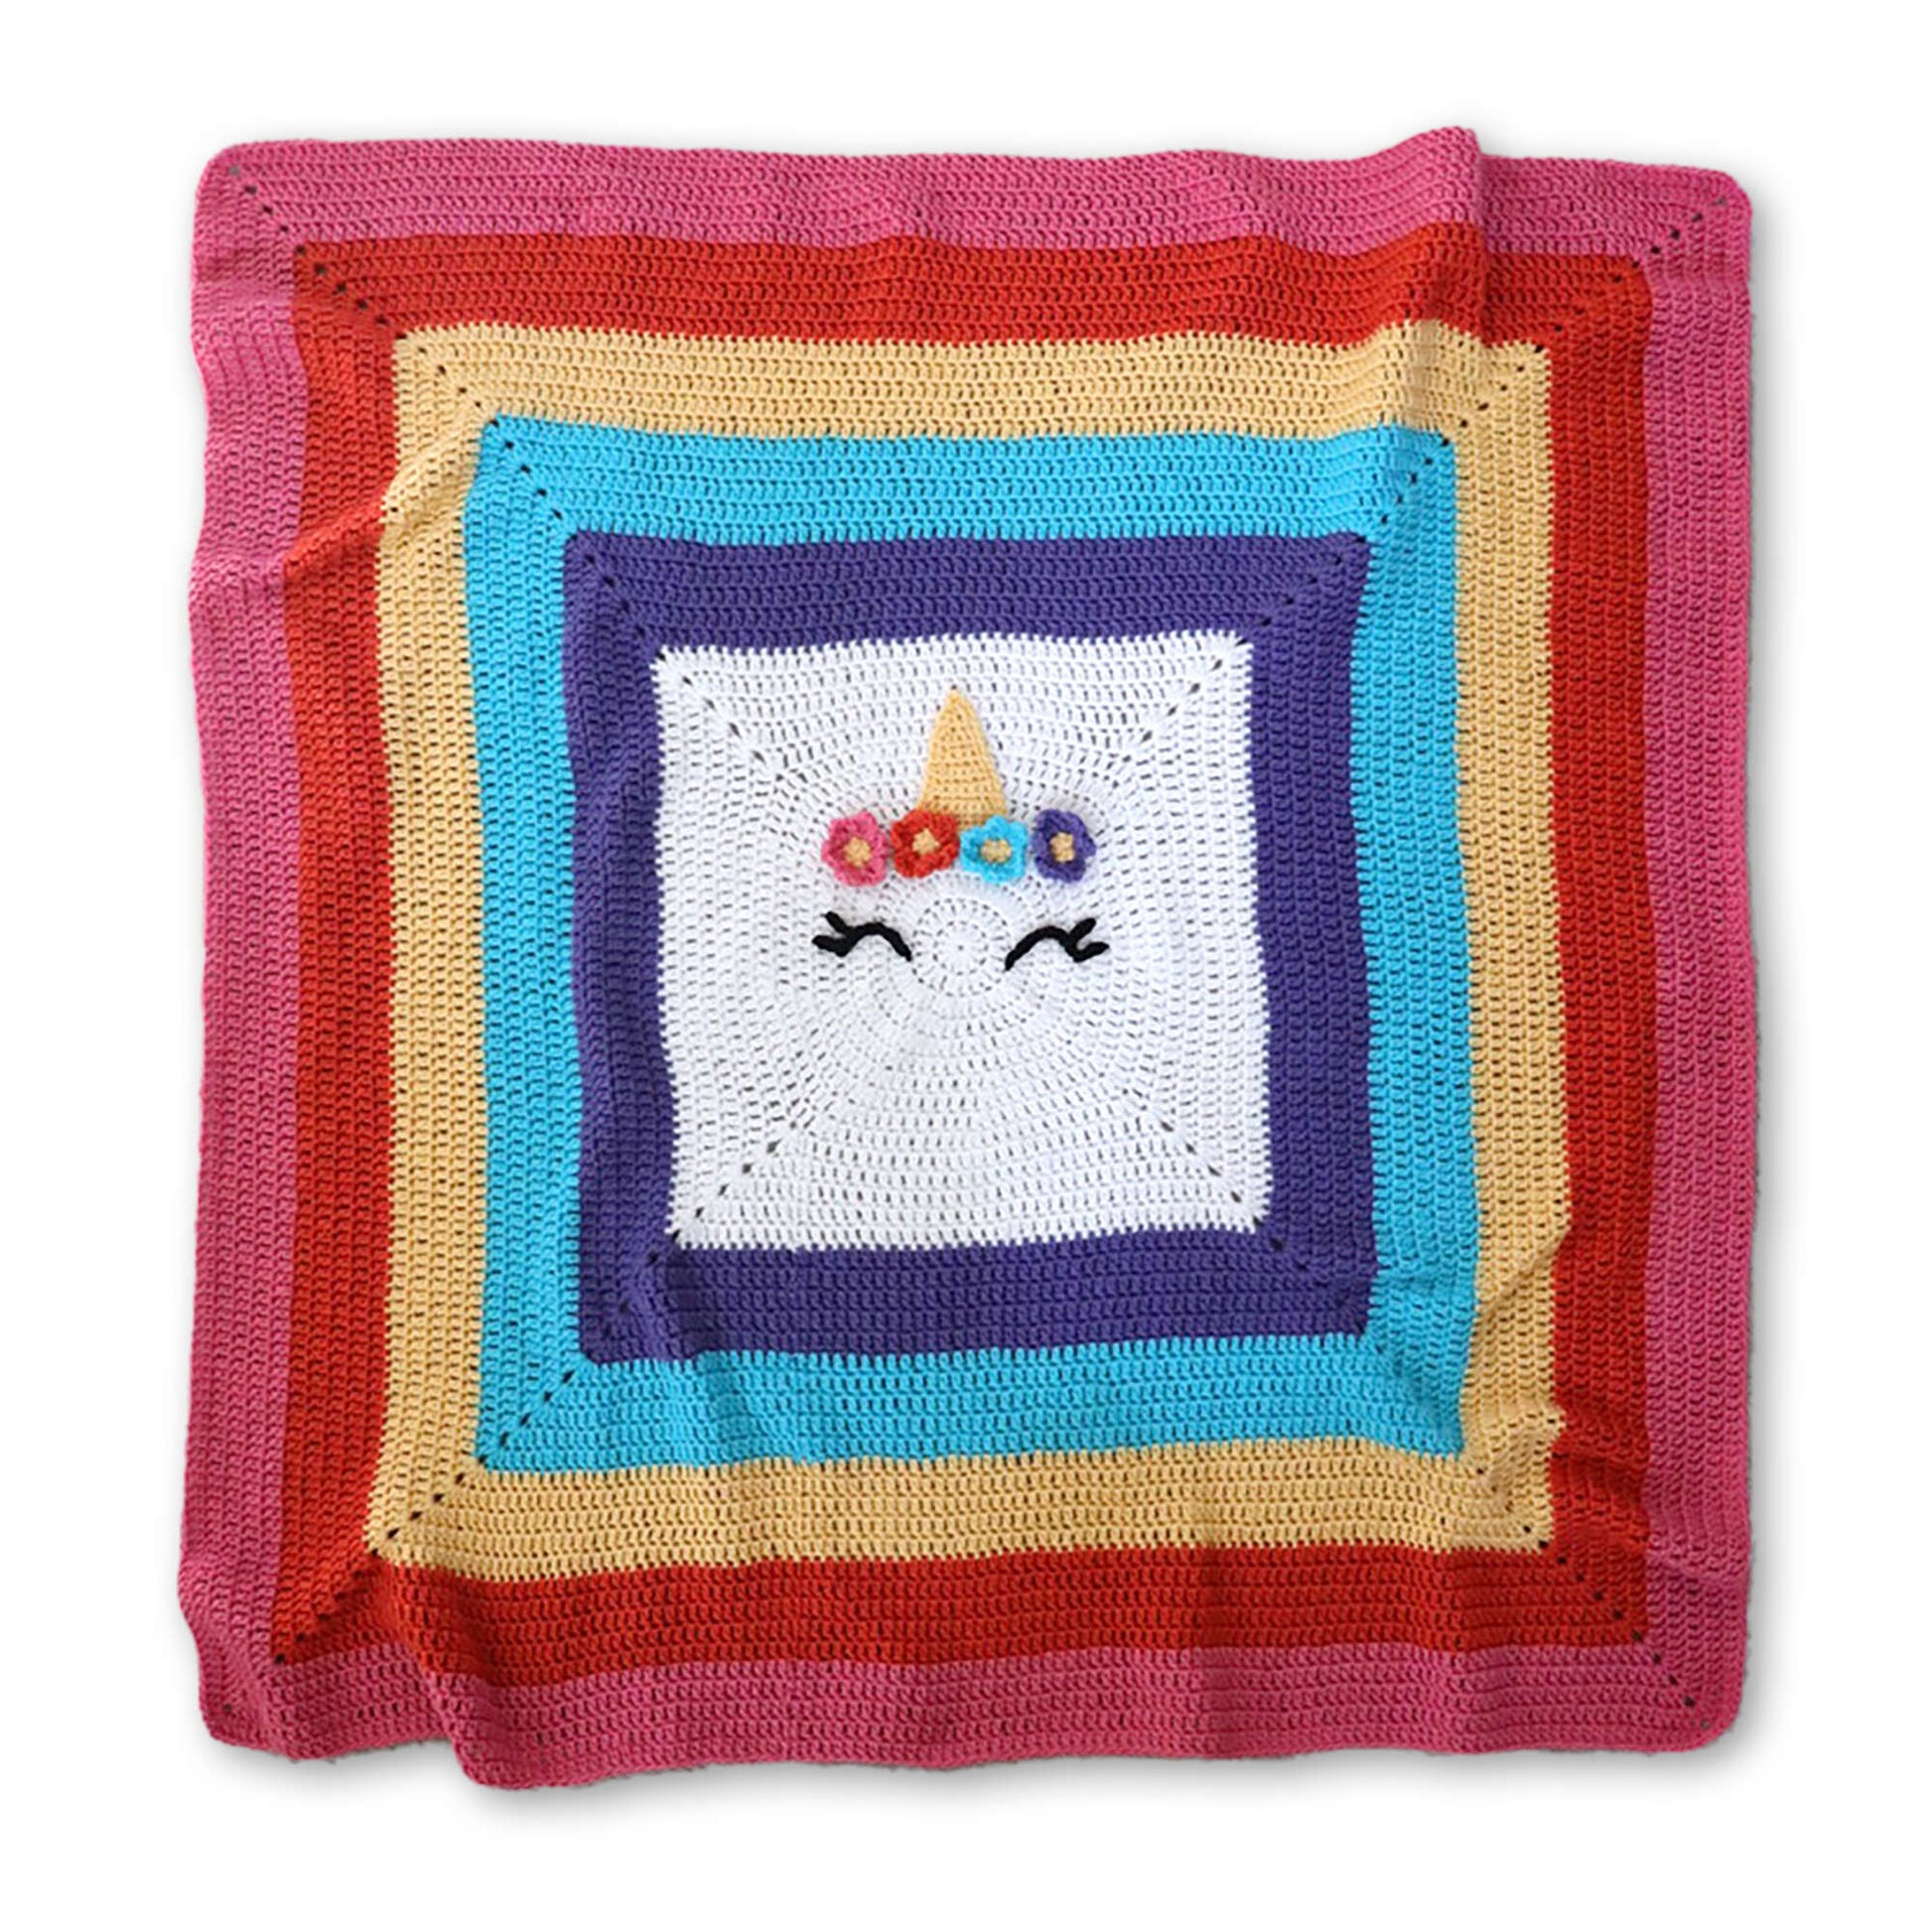 Free Red Heart Crochet Unicorn Blanket Pattern